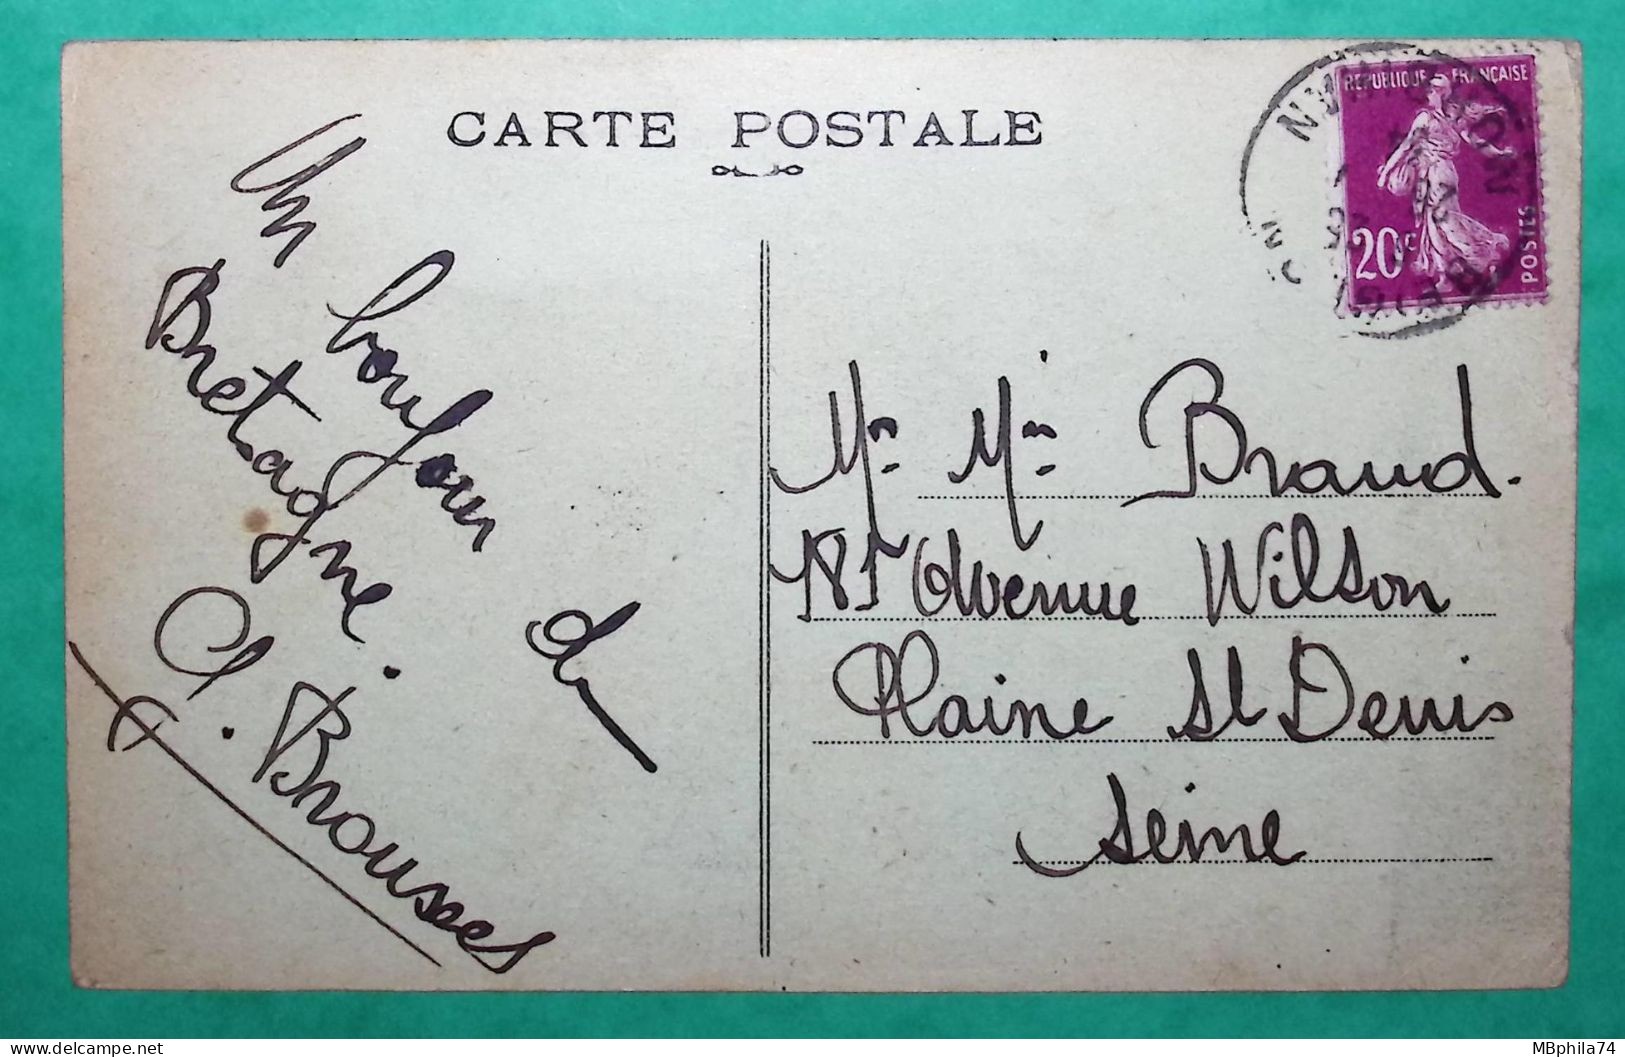 CARTE POSTALE BEIGNON MORBIHAN LE CALVAIRE ET LA POSTE POUR LA PLAINE ST DENIS SEINE 1934 POST CARD FRANCE - Poste & Facteurs